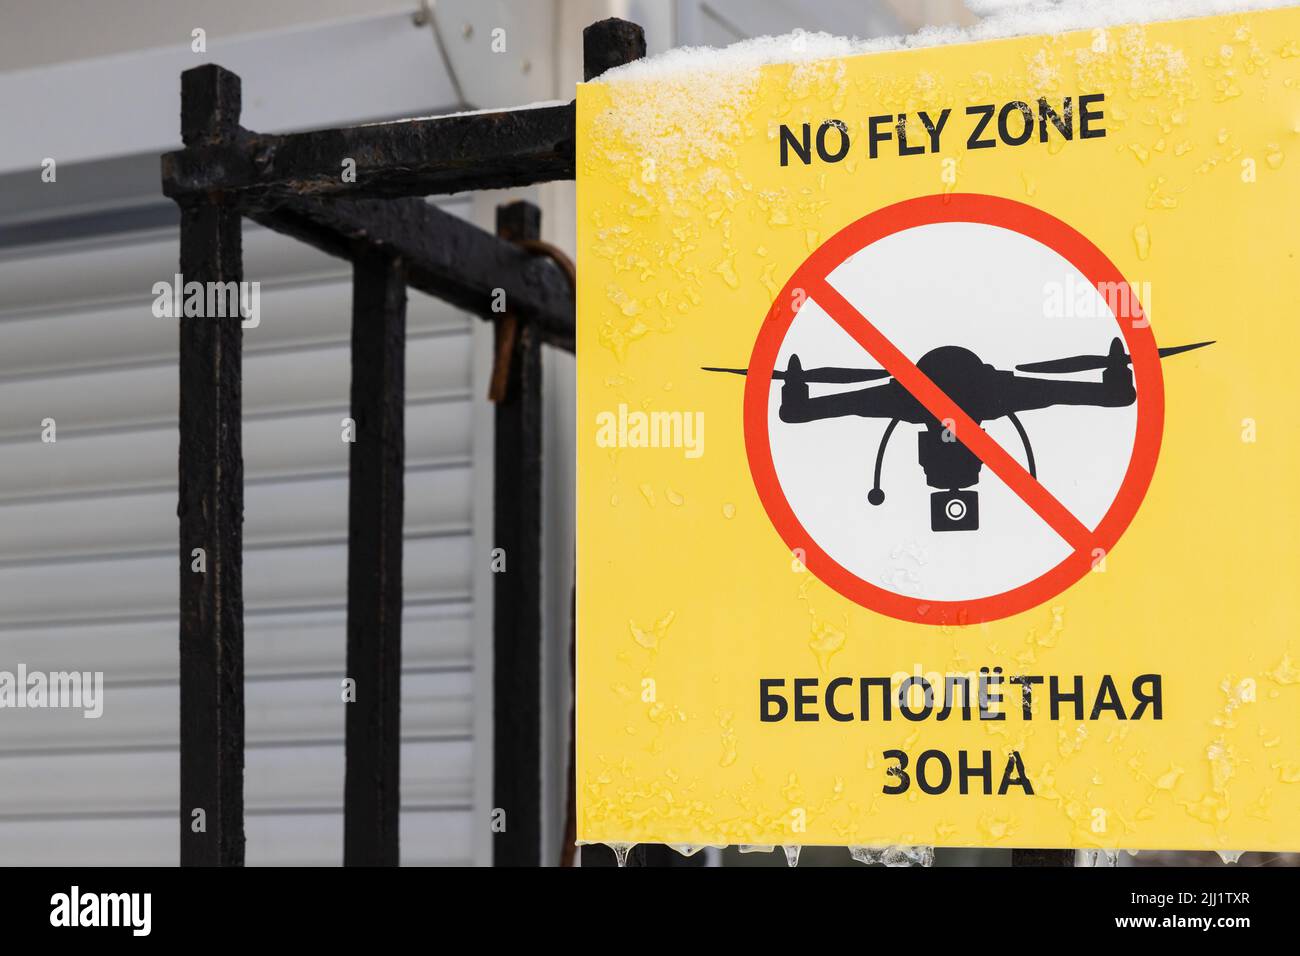 No fly zone, segno di divieto con testo russo e inglese su sfondo giallo Foto Stock